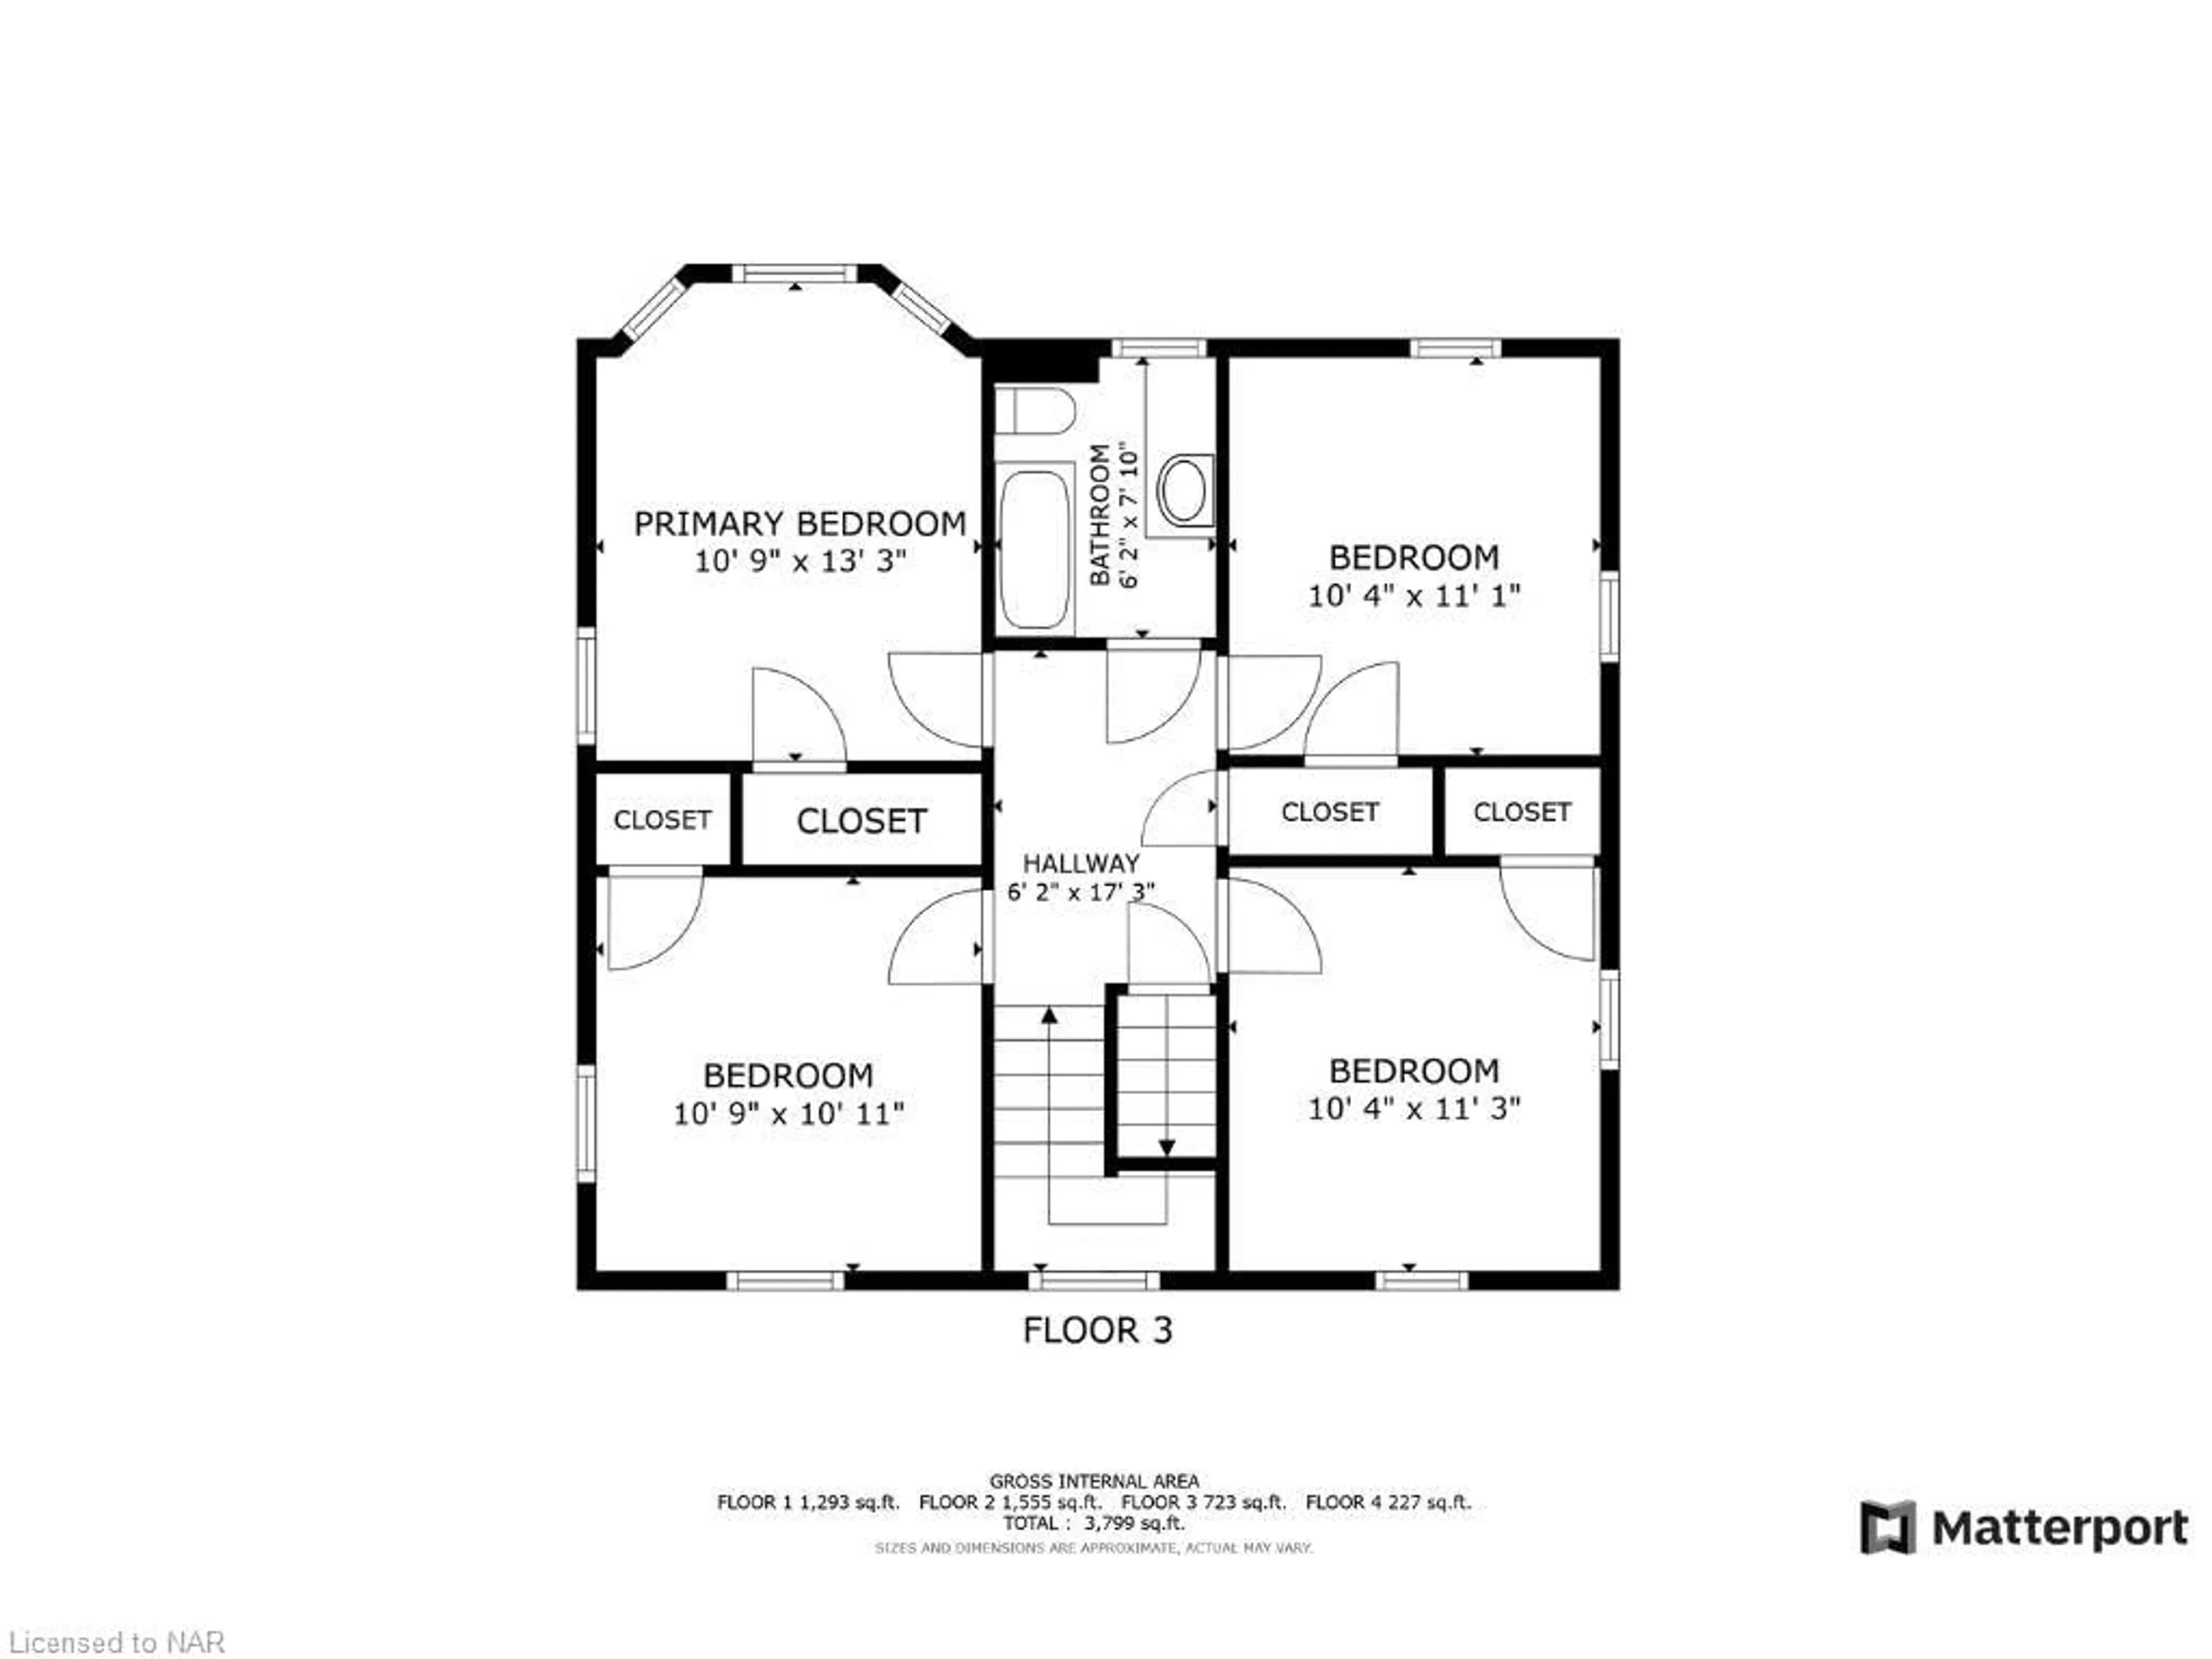 Floor plan for 5002 Jepson St, Niagara Falls Ontario L2E 1K2